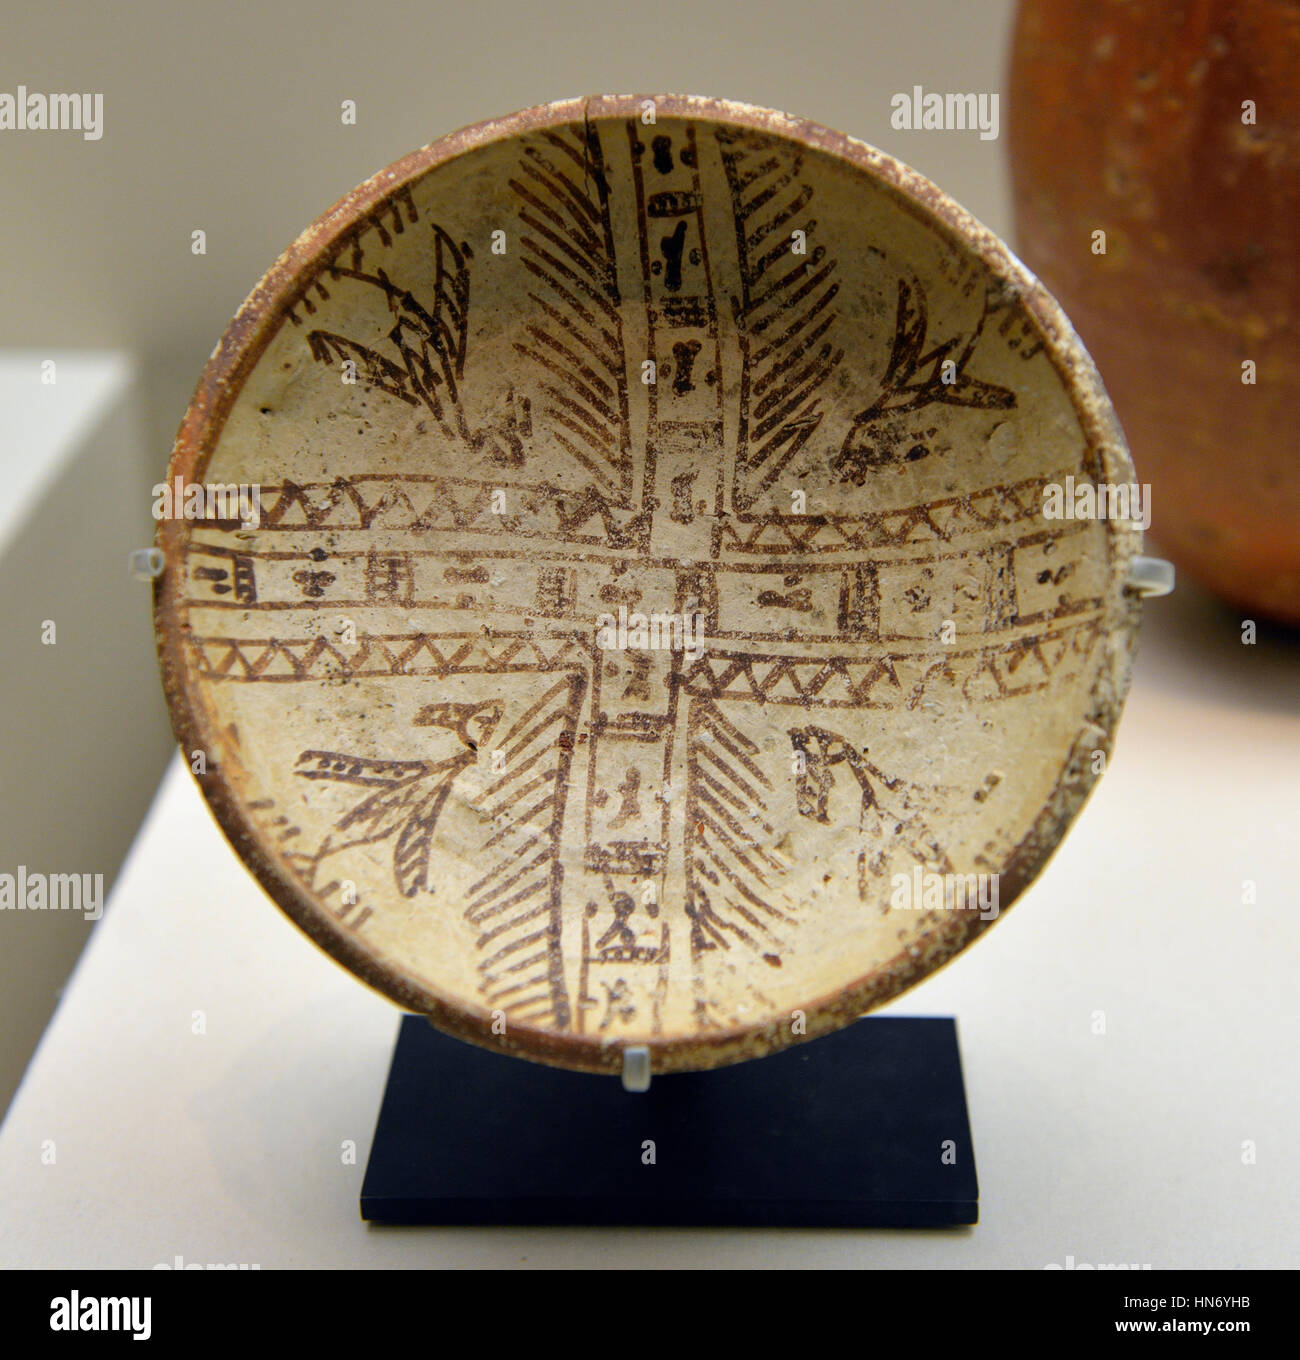 Bol peint. Tayma, Sana'AIE. Début-mi-1er millénaire avant notre ère. Céramique. Musée National, Riyad. L'Arabie Saoudite. Banque D'Images